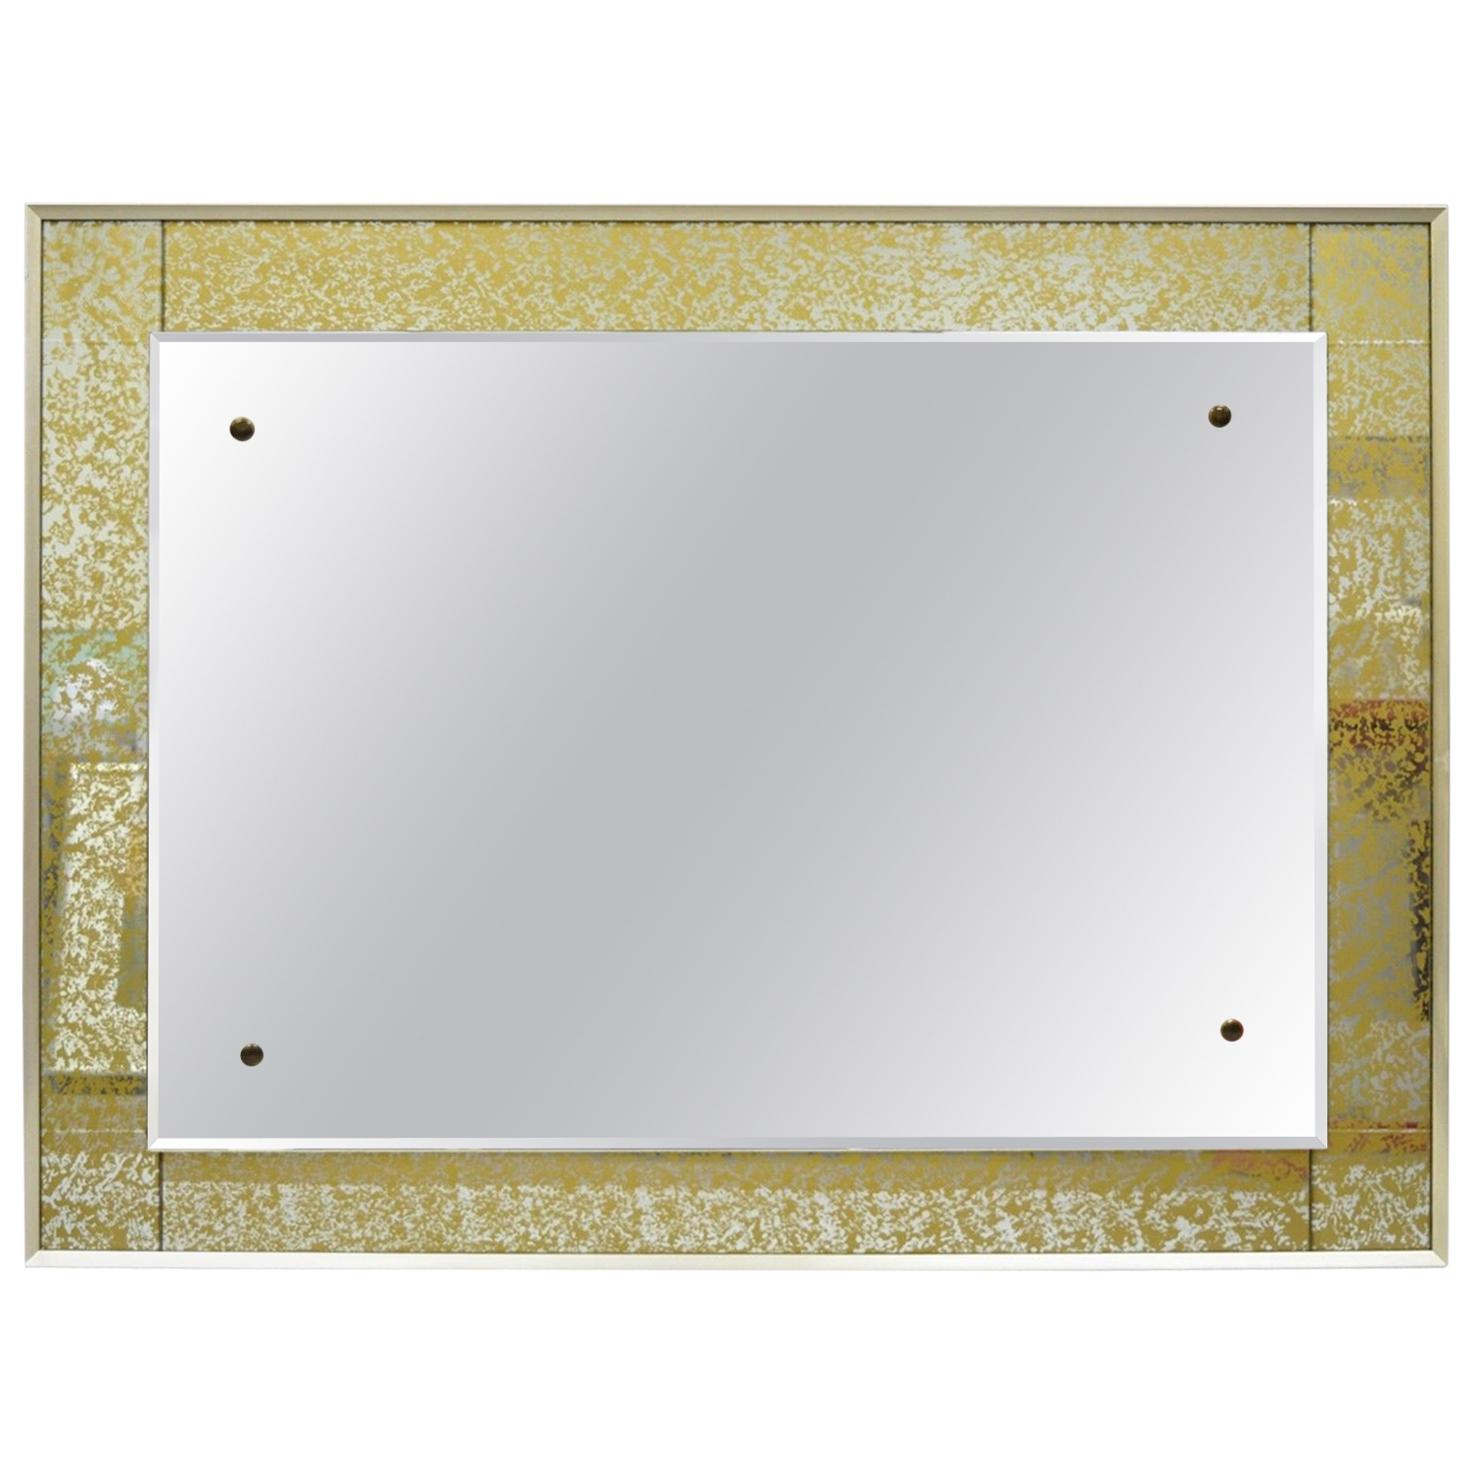 Modernist Mirror Verre Eglomise Gold Frame Josef Frank Attributed Made in Sweden